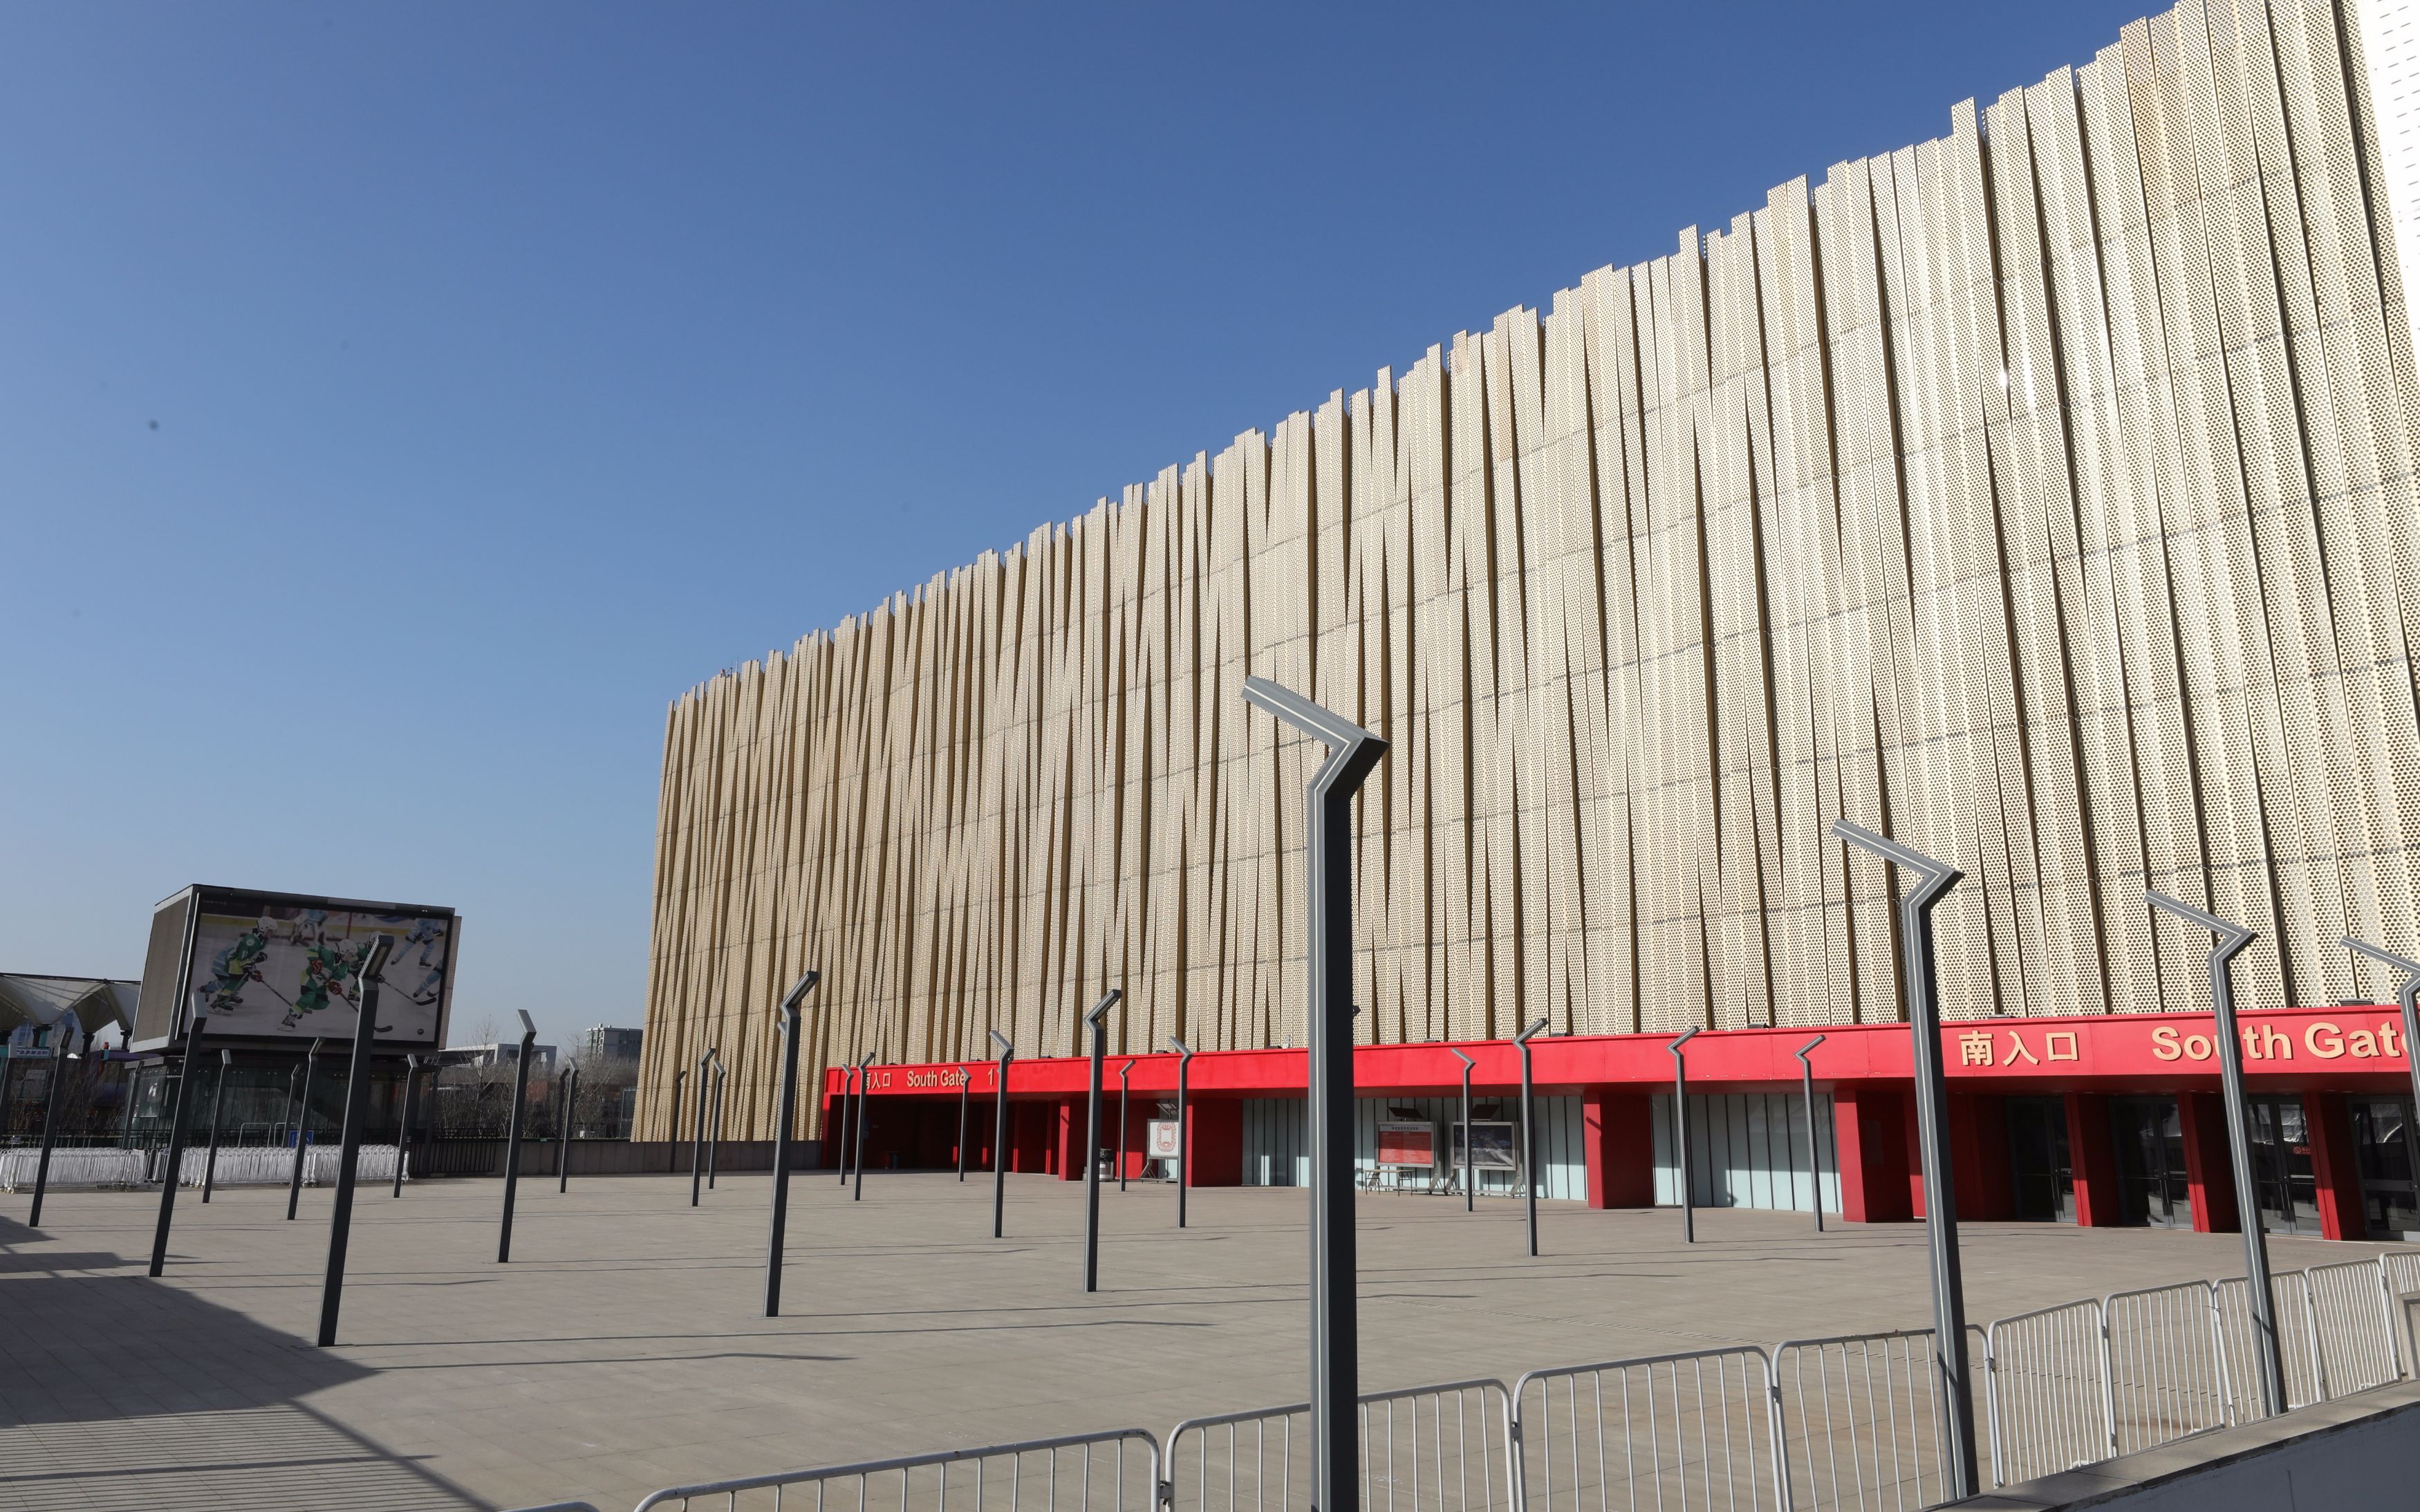 五棵松体育馆改造完成冬奥时将承接冰球比赛项目